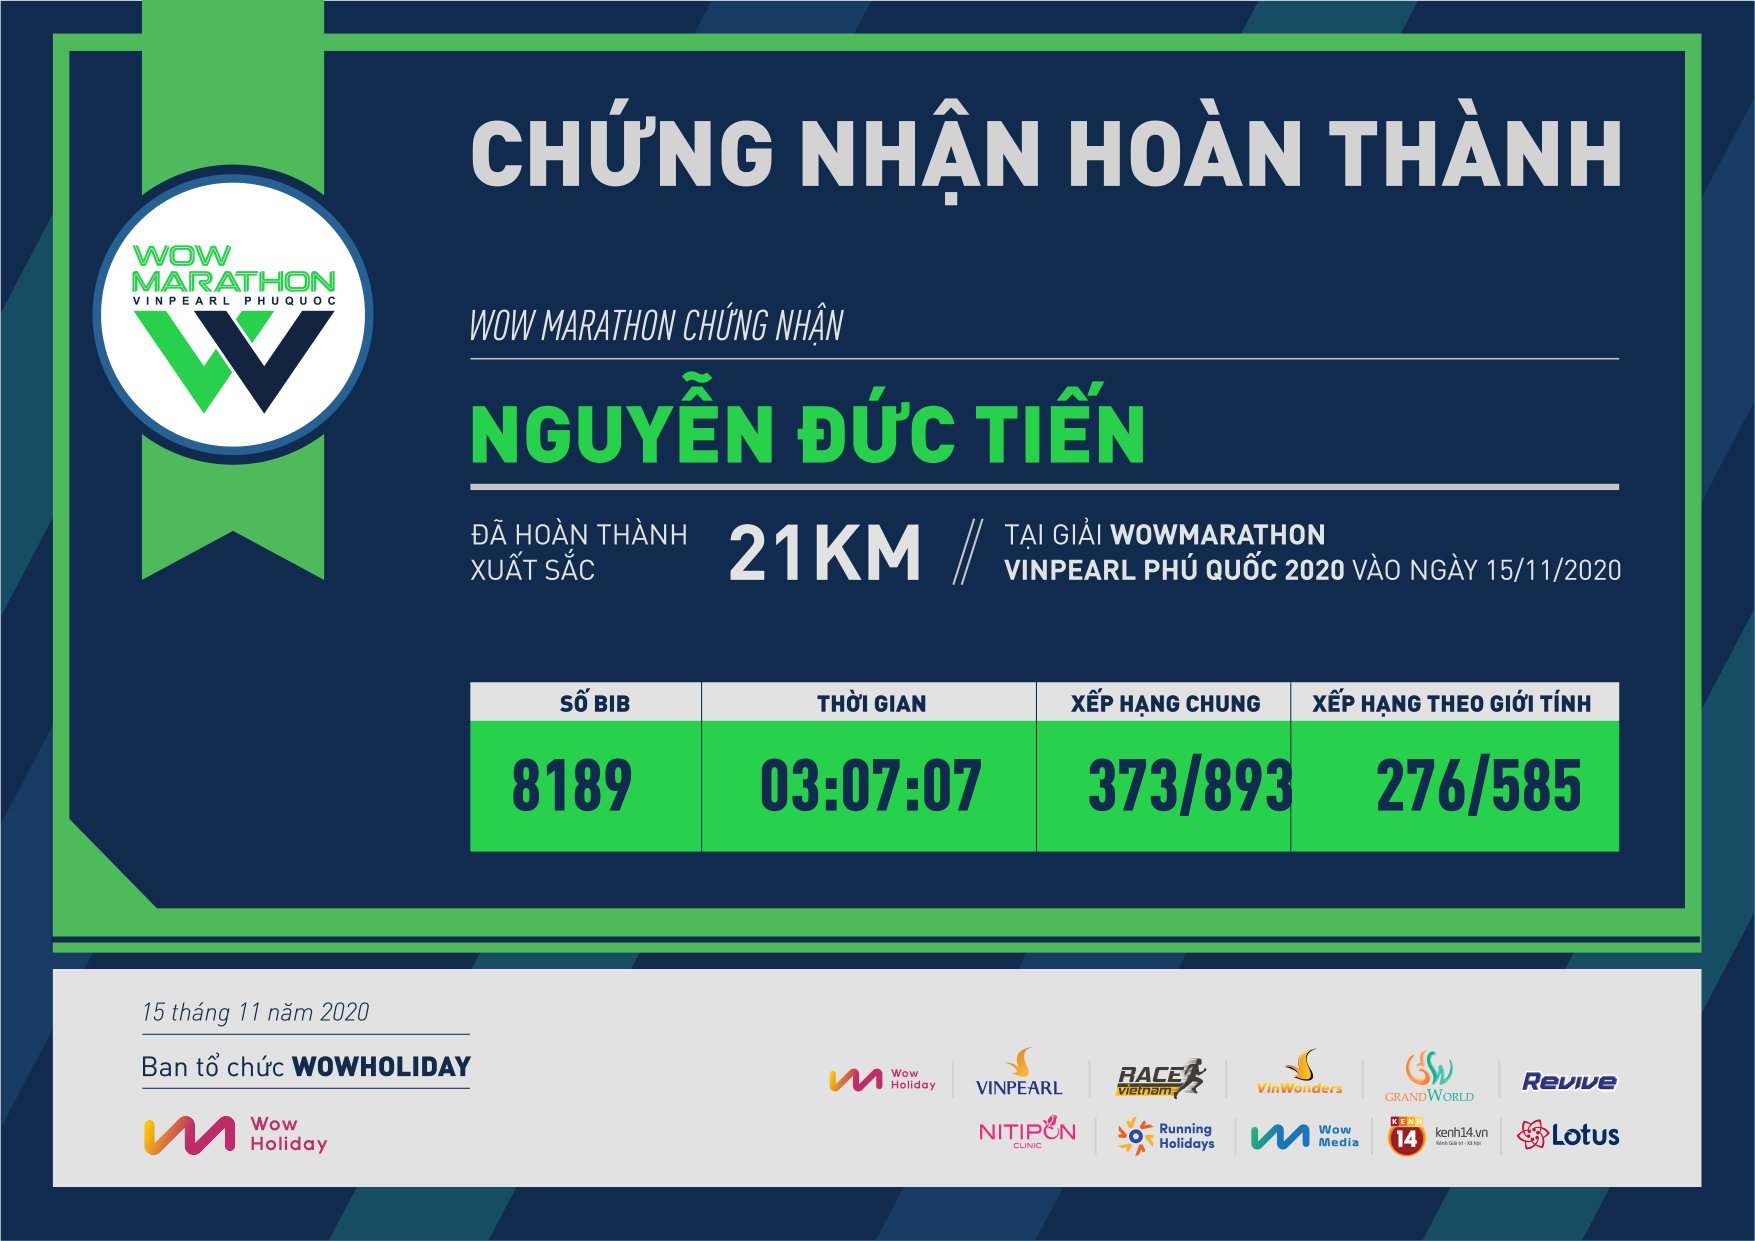 8189 - Nguyễn Đức Tiến